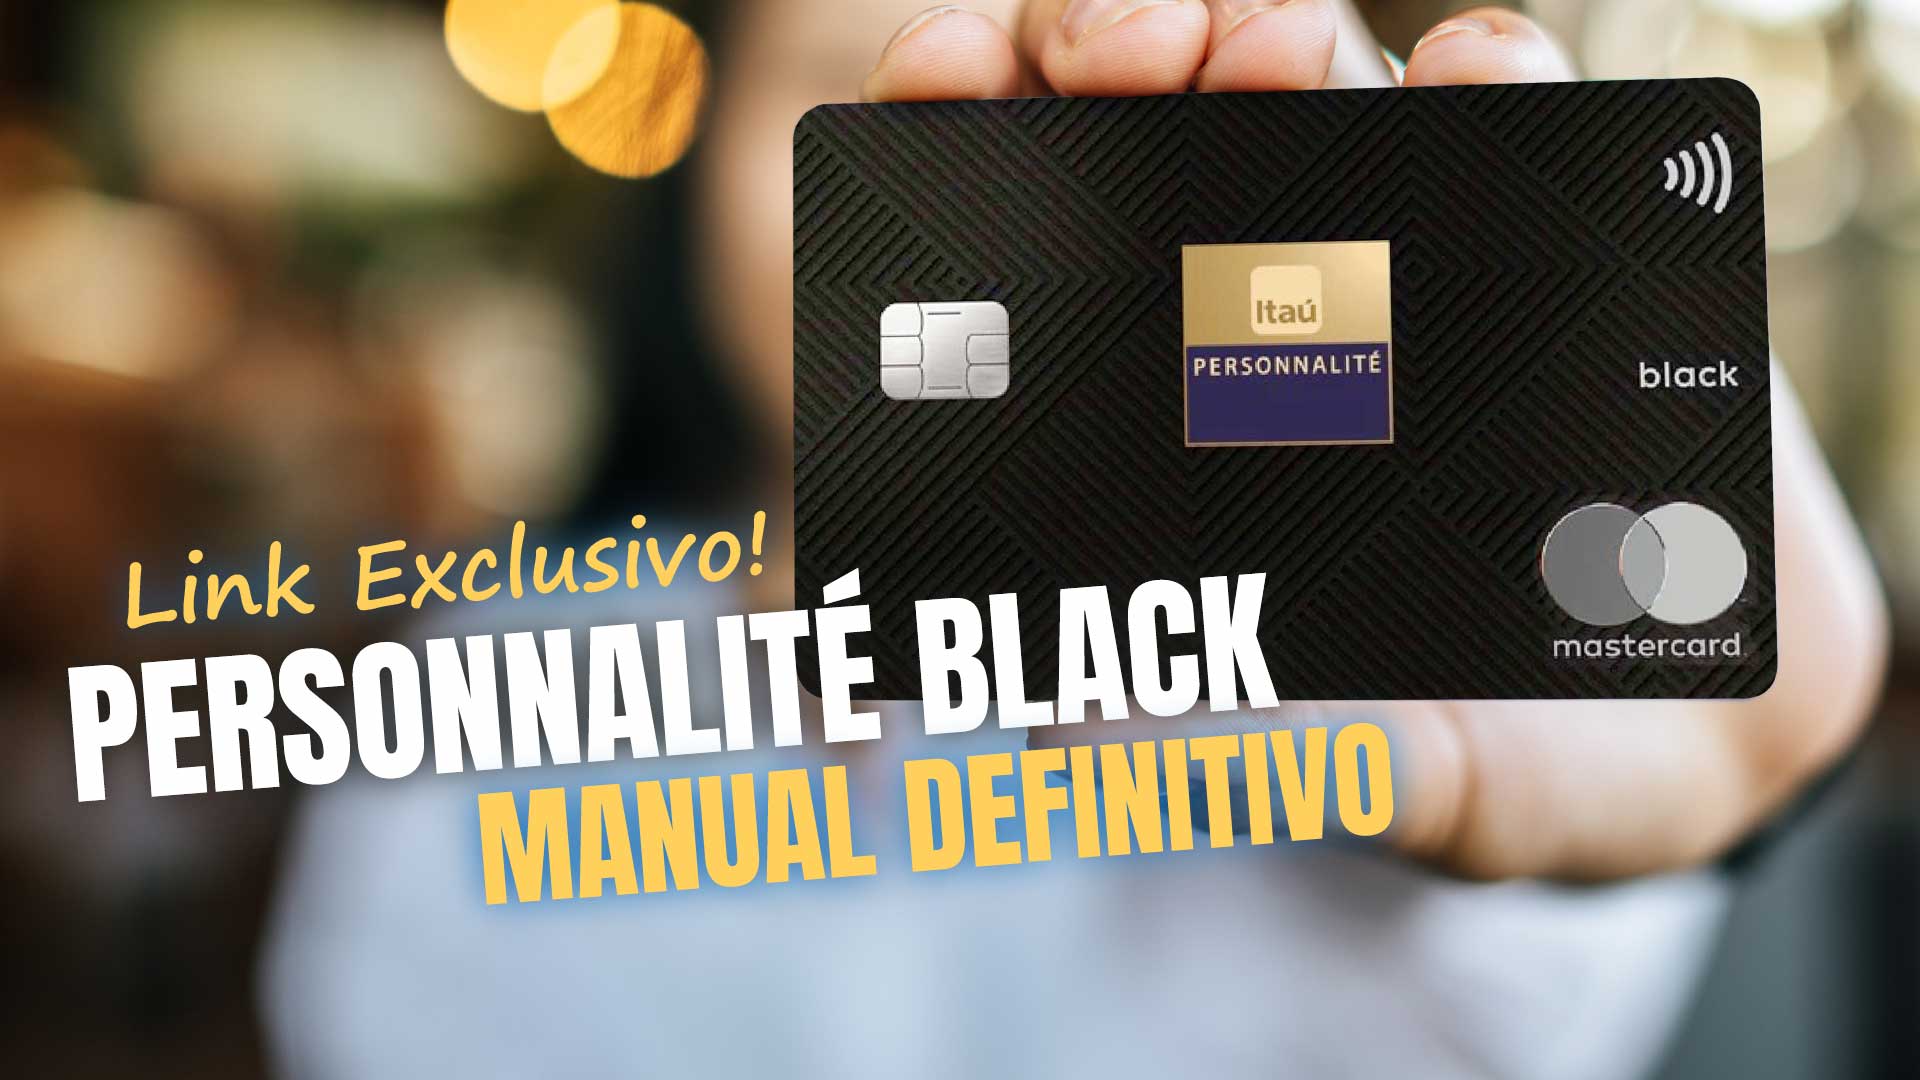 Cartão Caixa MasterCard Black